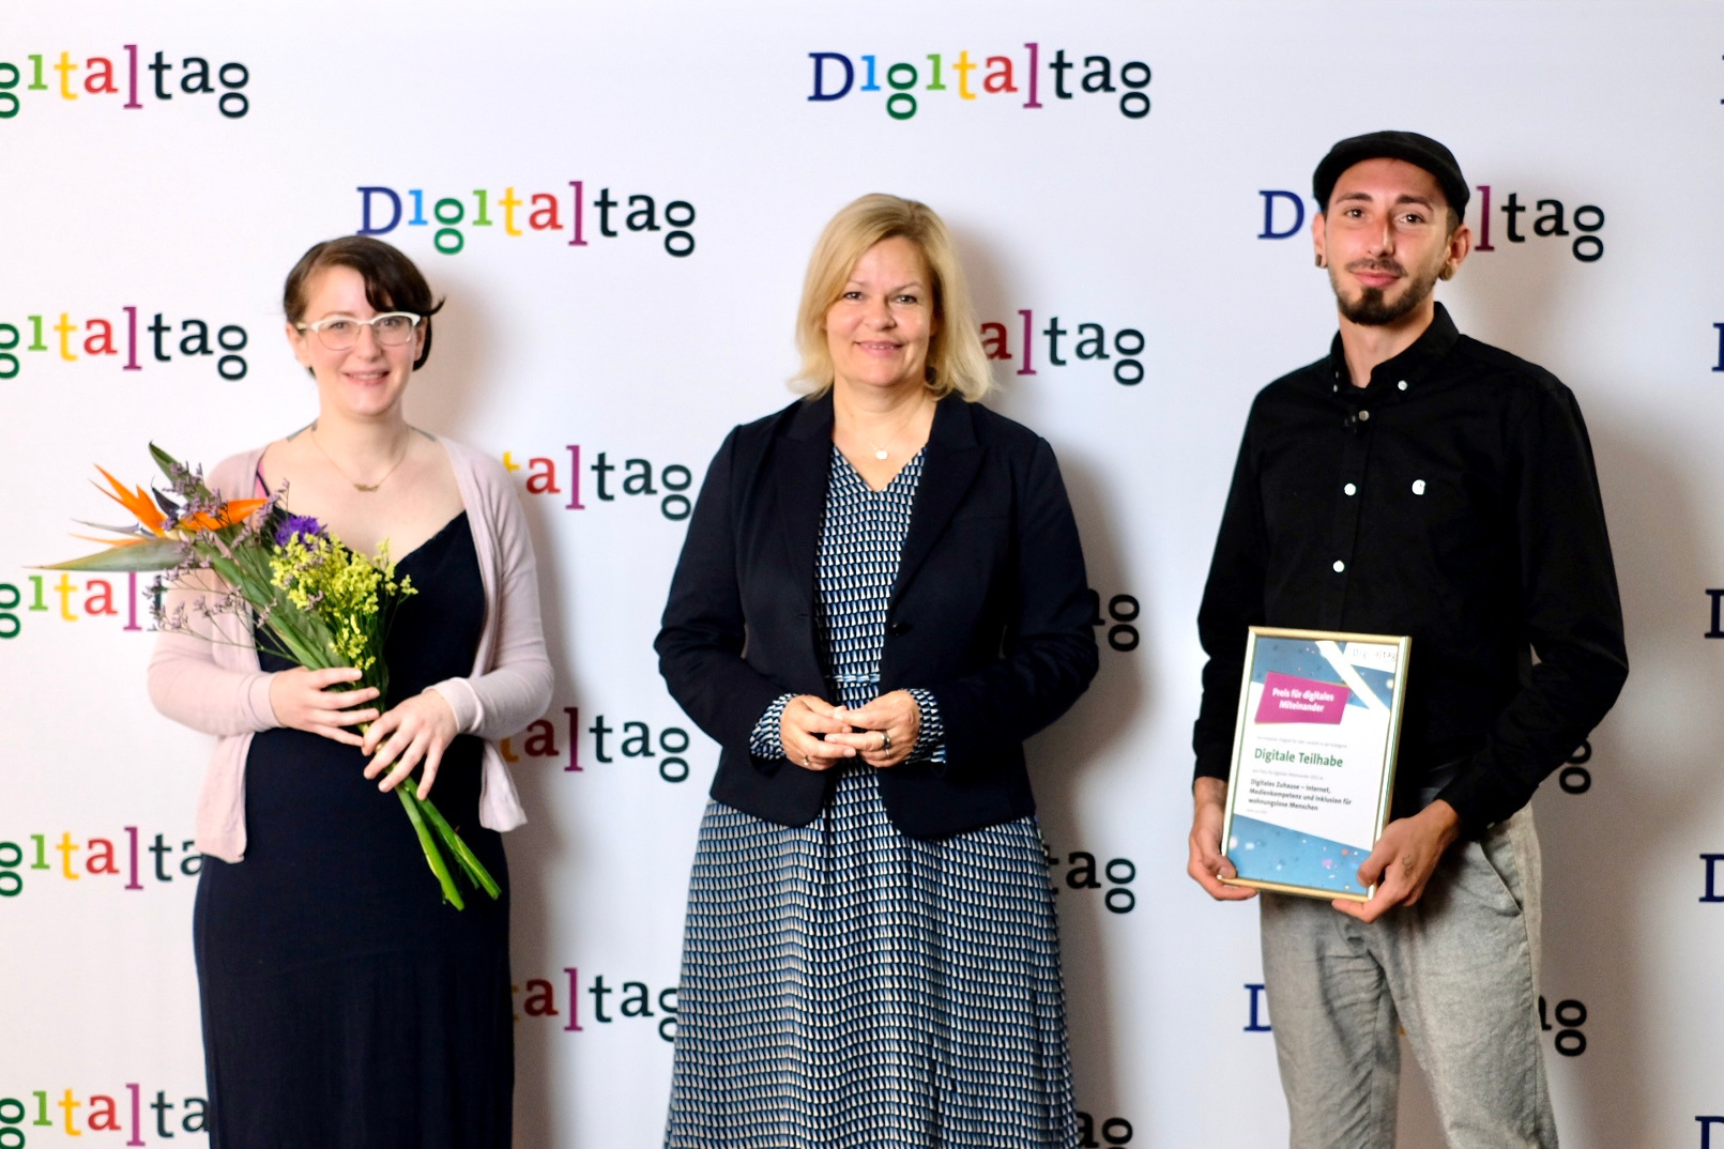 Bundesministerin des Innern und für Heimat Nancy Faeser mit den Gewinnern des Preises für digitales Miteinander in der Kategorie Digitale Teilhabe